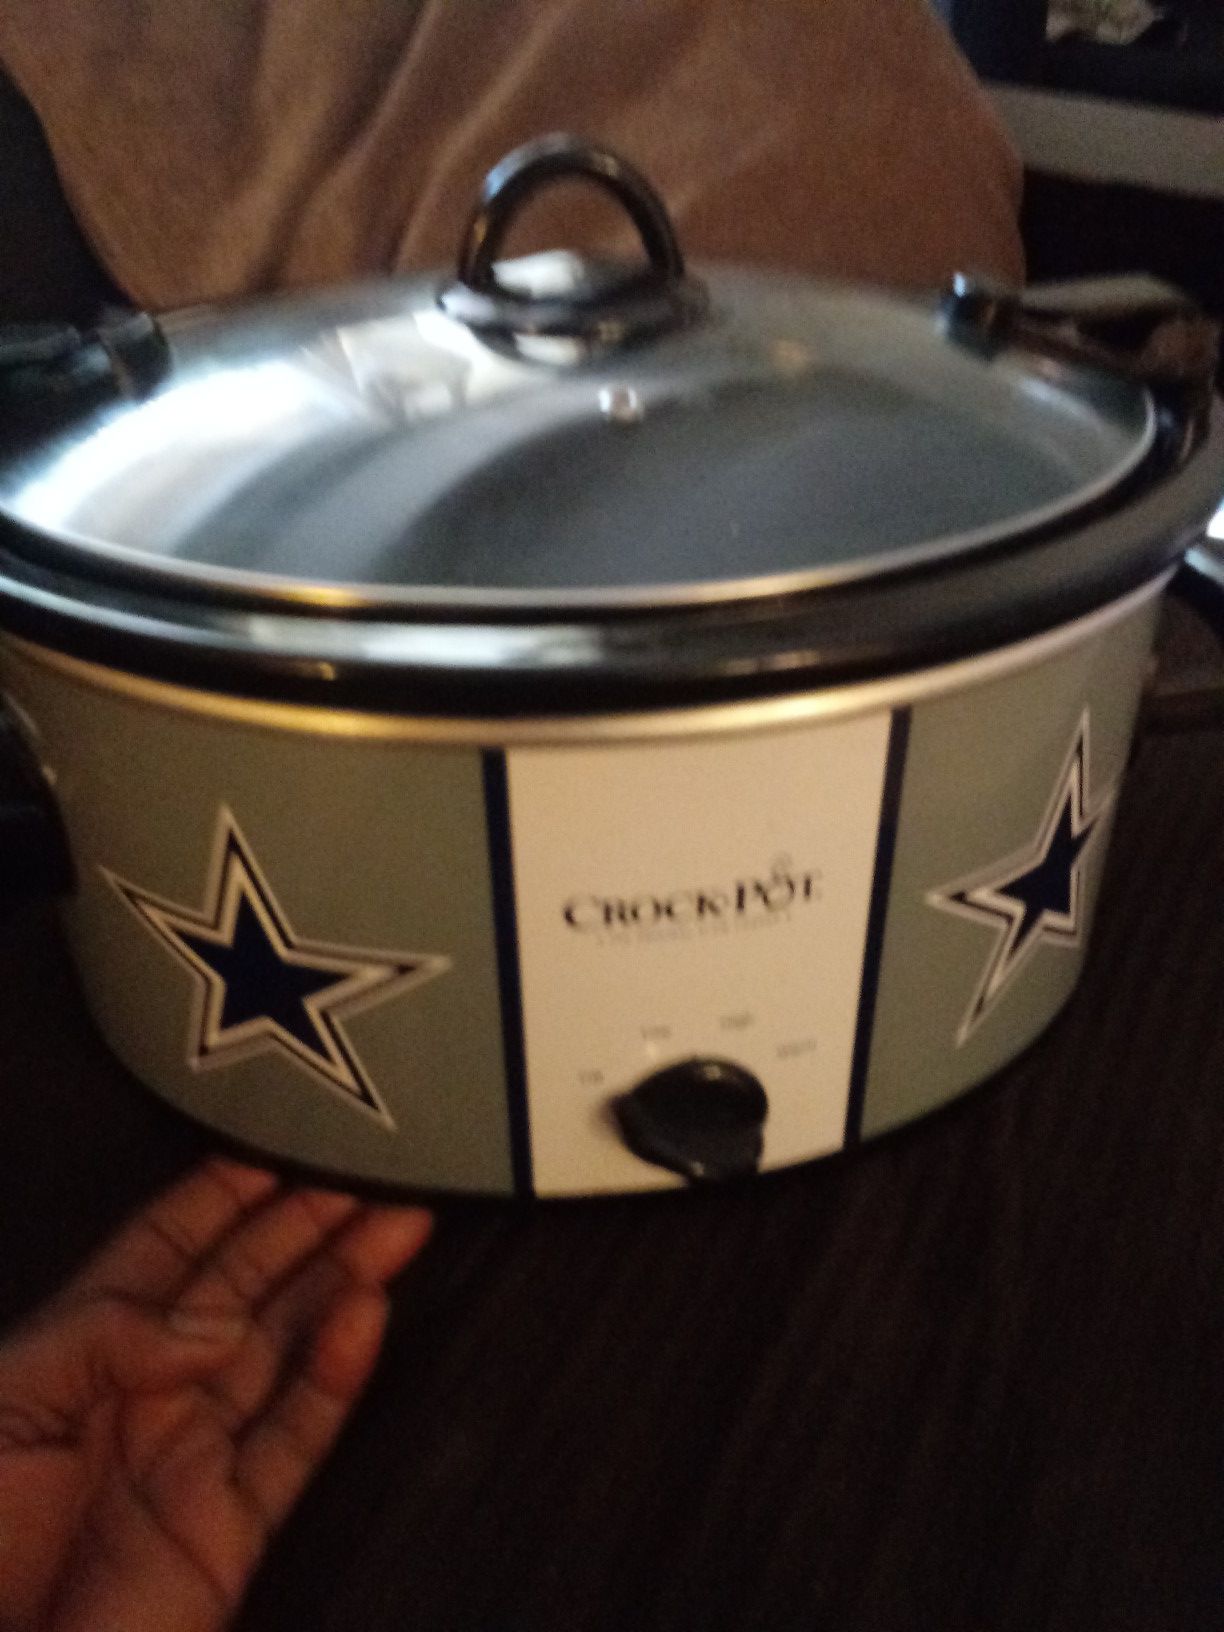 Crock-Pot Dallas Cowboys